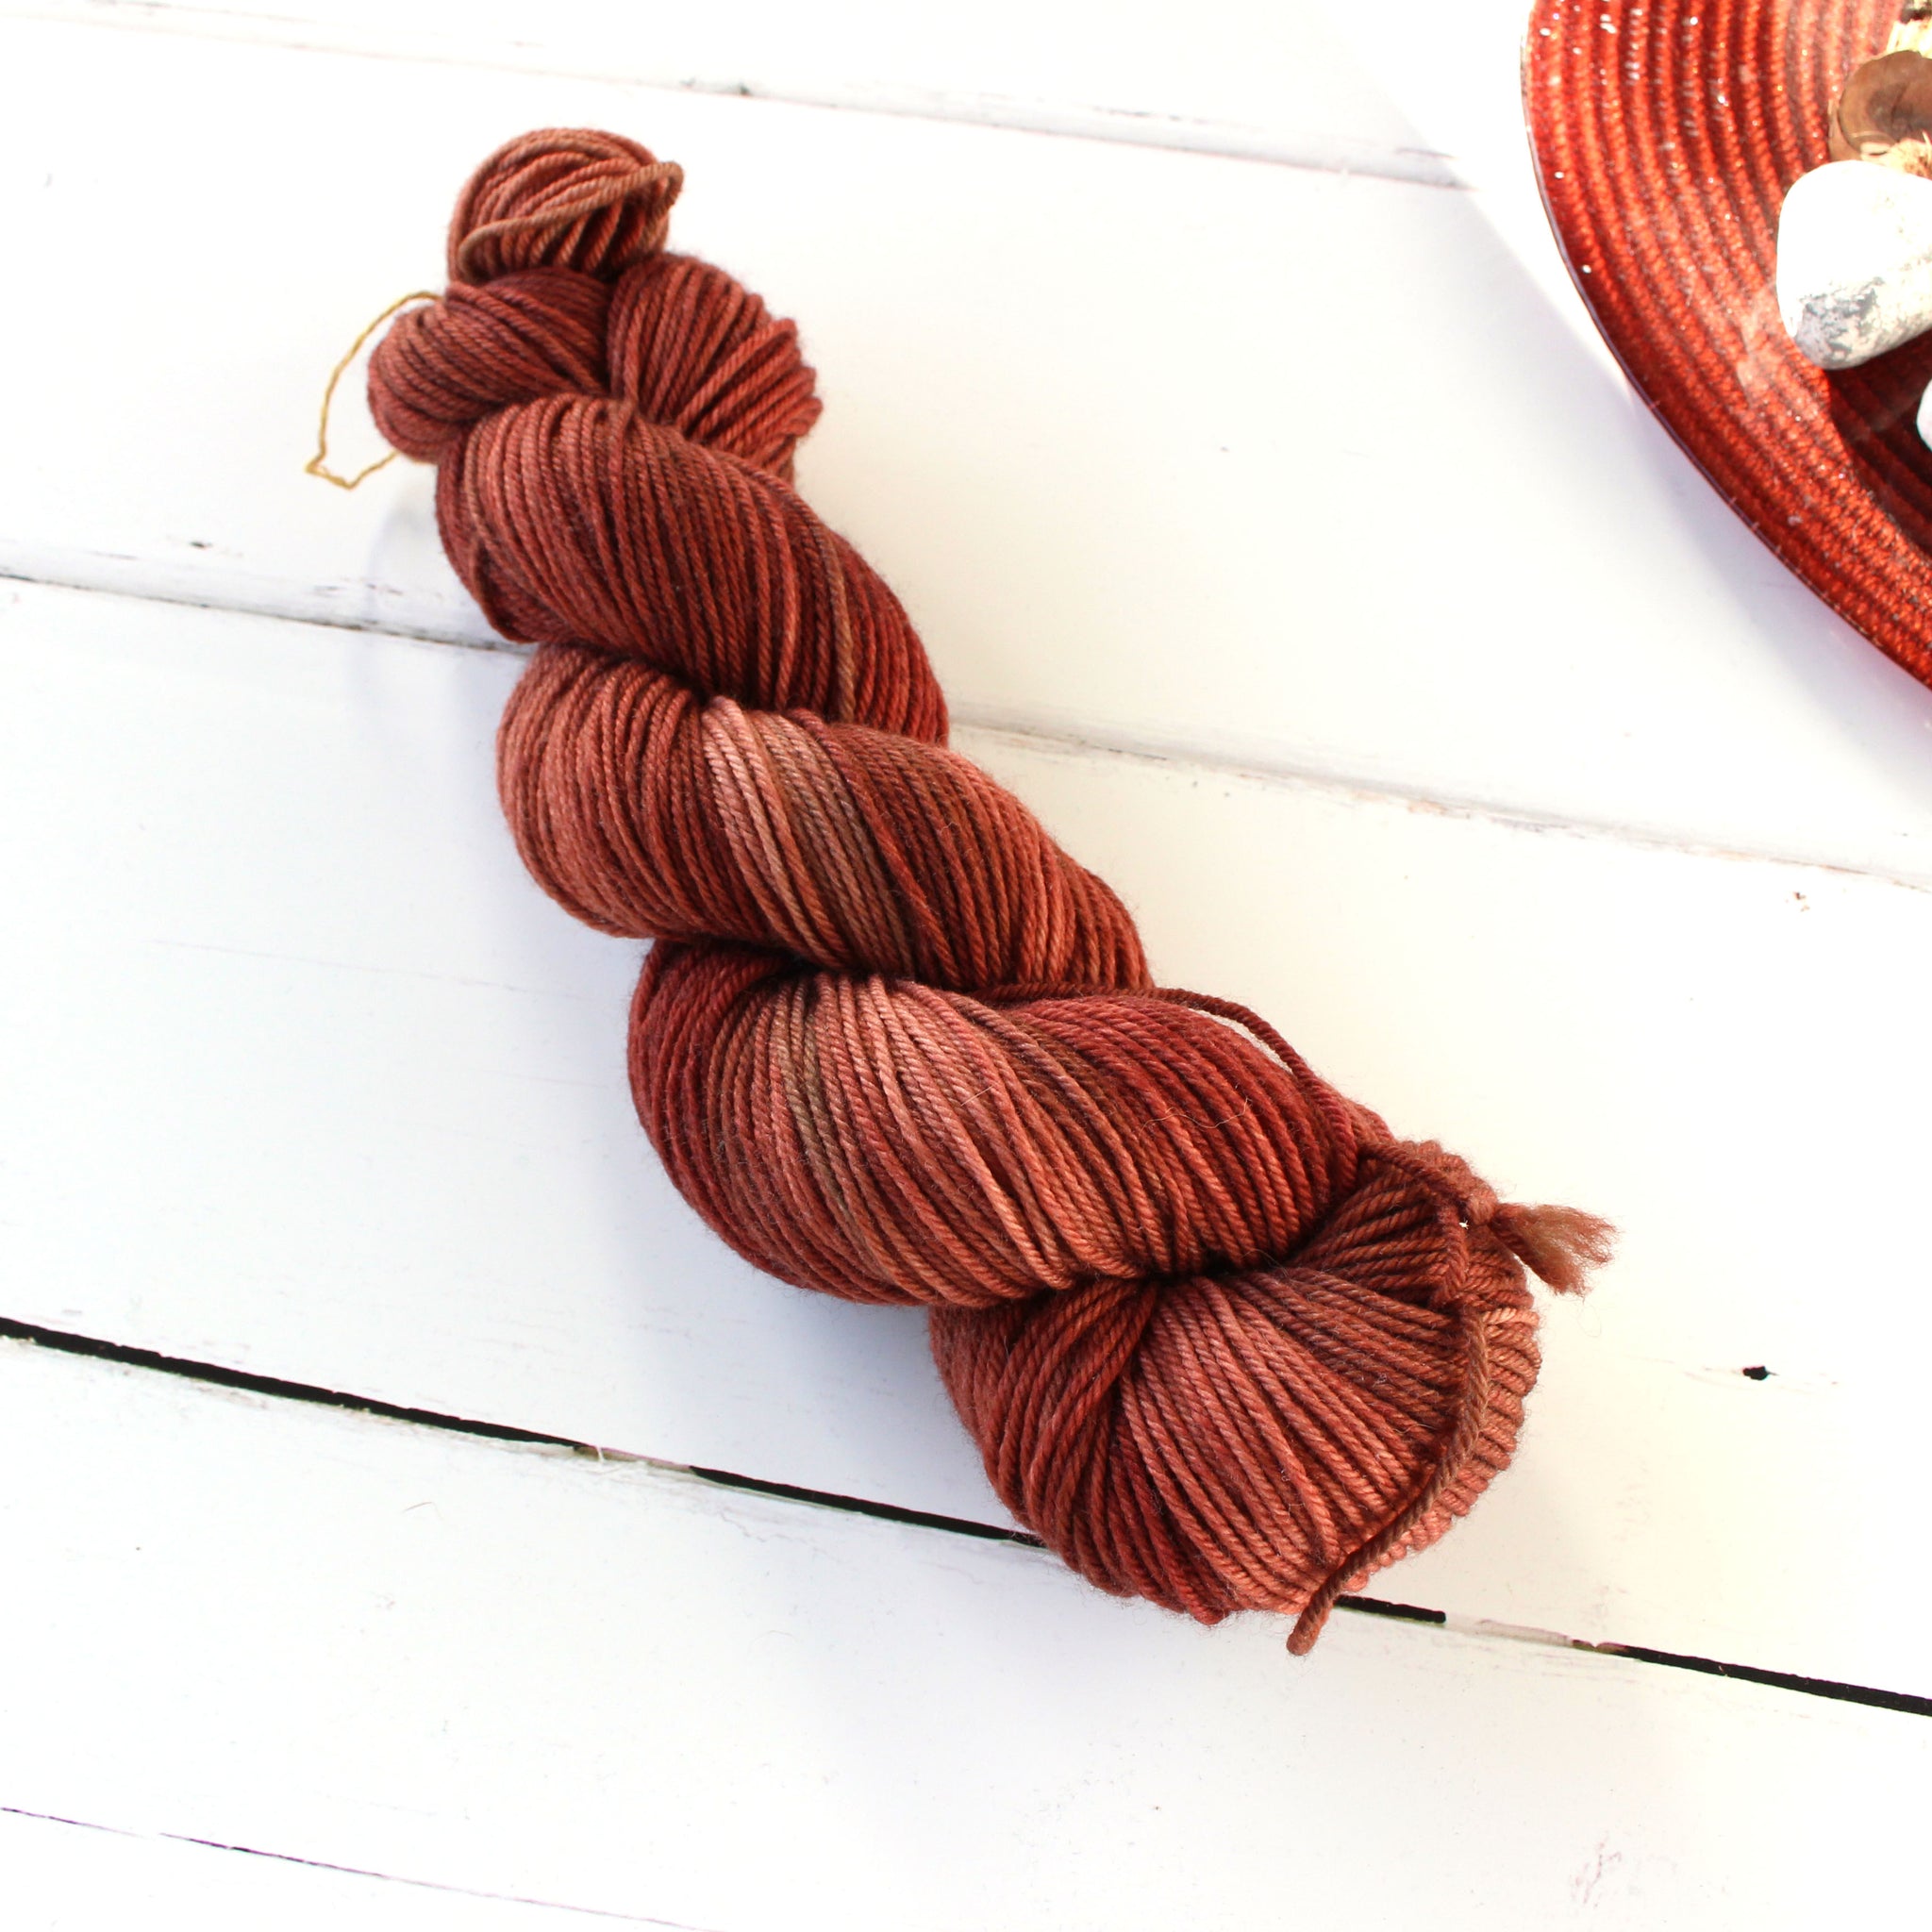 Merino Sokkenwol (Double Knit) - Copper - It's all in a nutshell